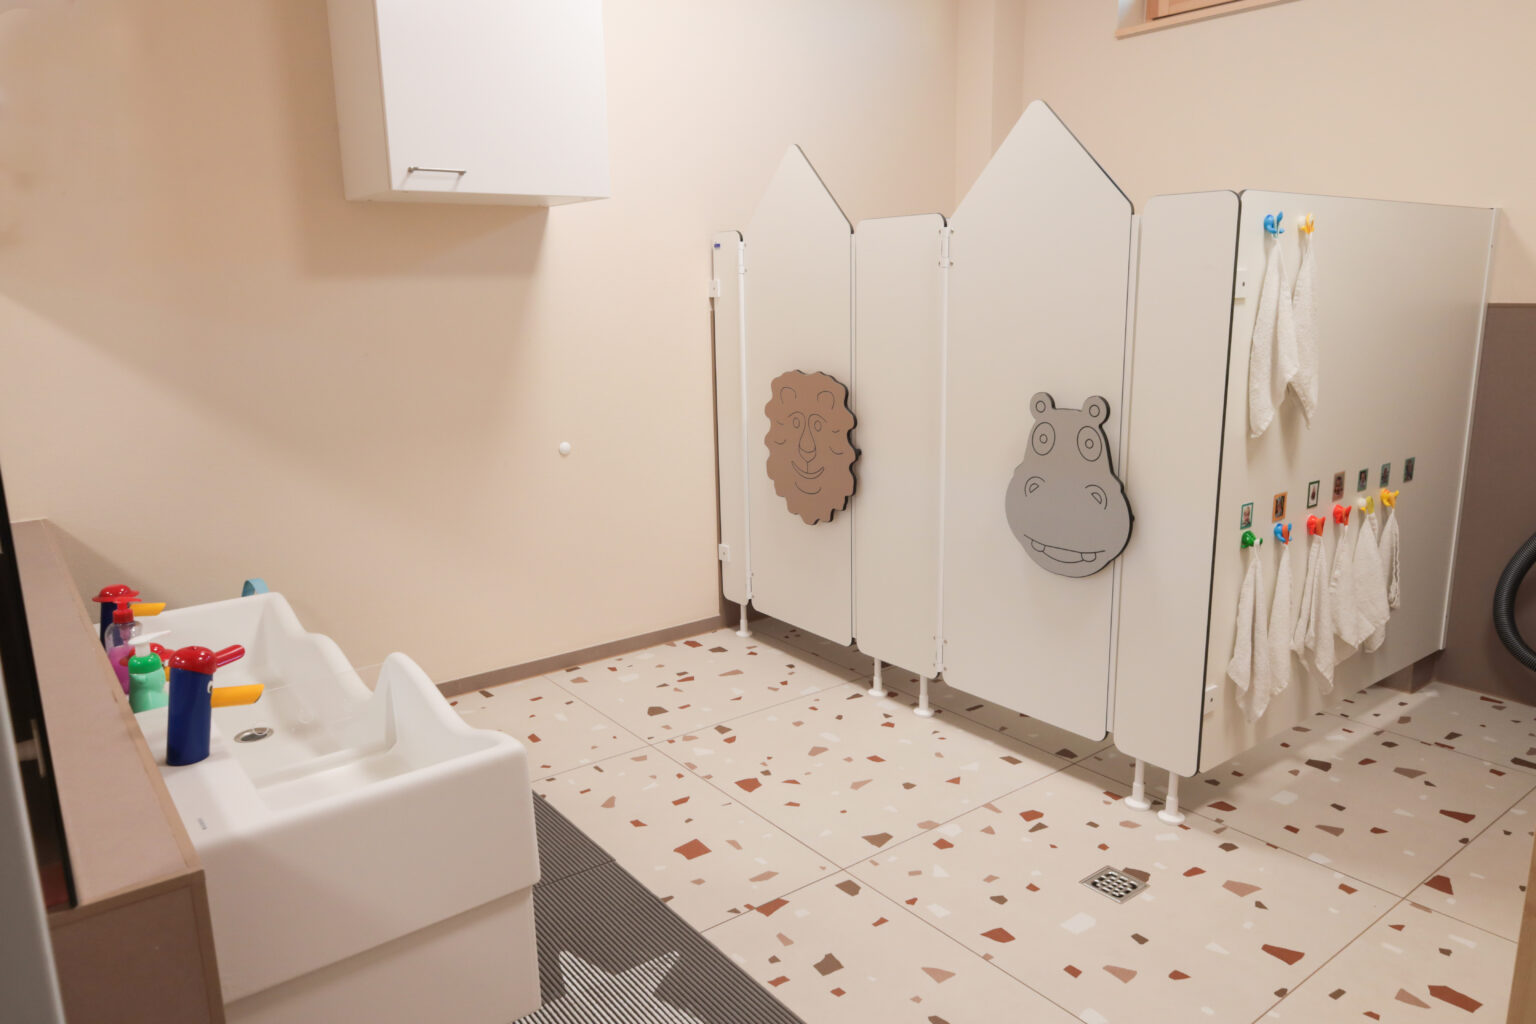 Das Badezimmer der Kindergroßtagespflege ist kindgerecht ausgestatt. Es gibt niedrige Waschbecke, Toilettenkabinen und einen Wickeltisch.